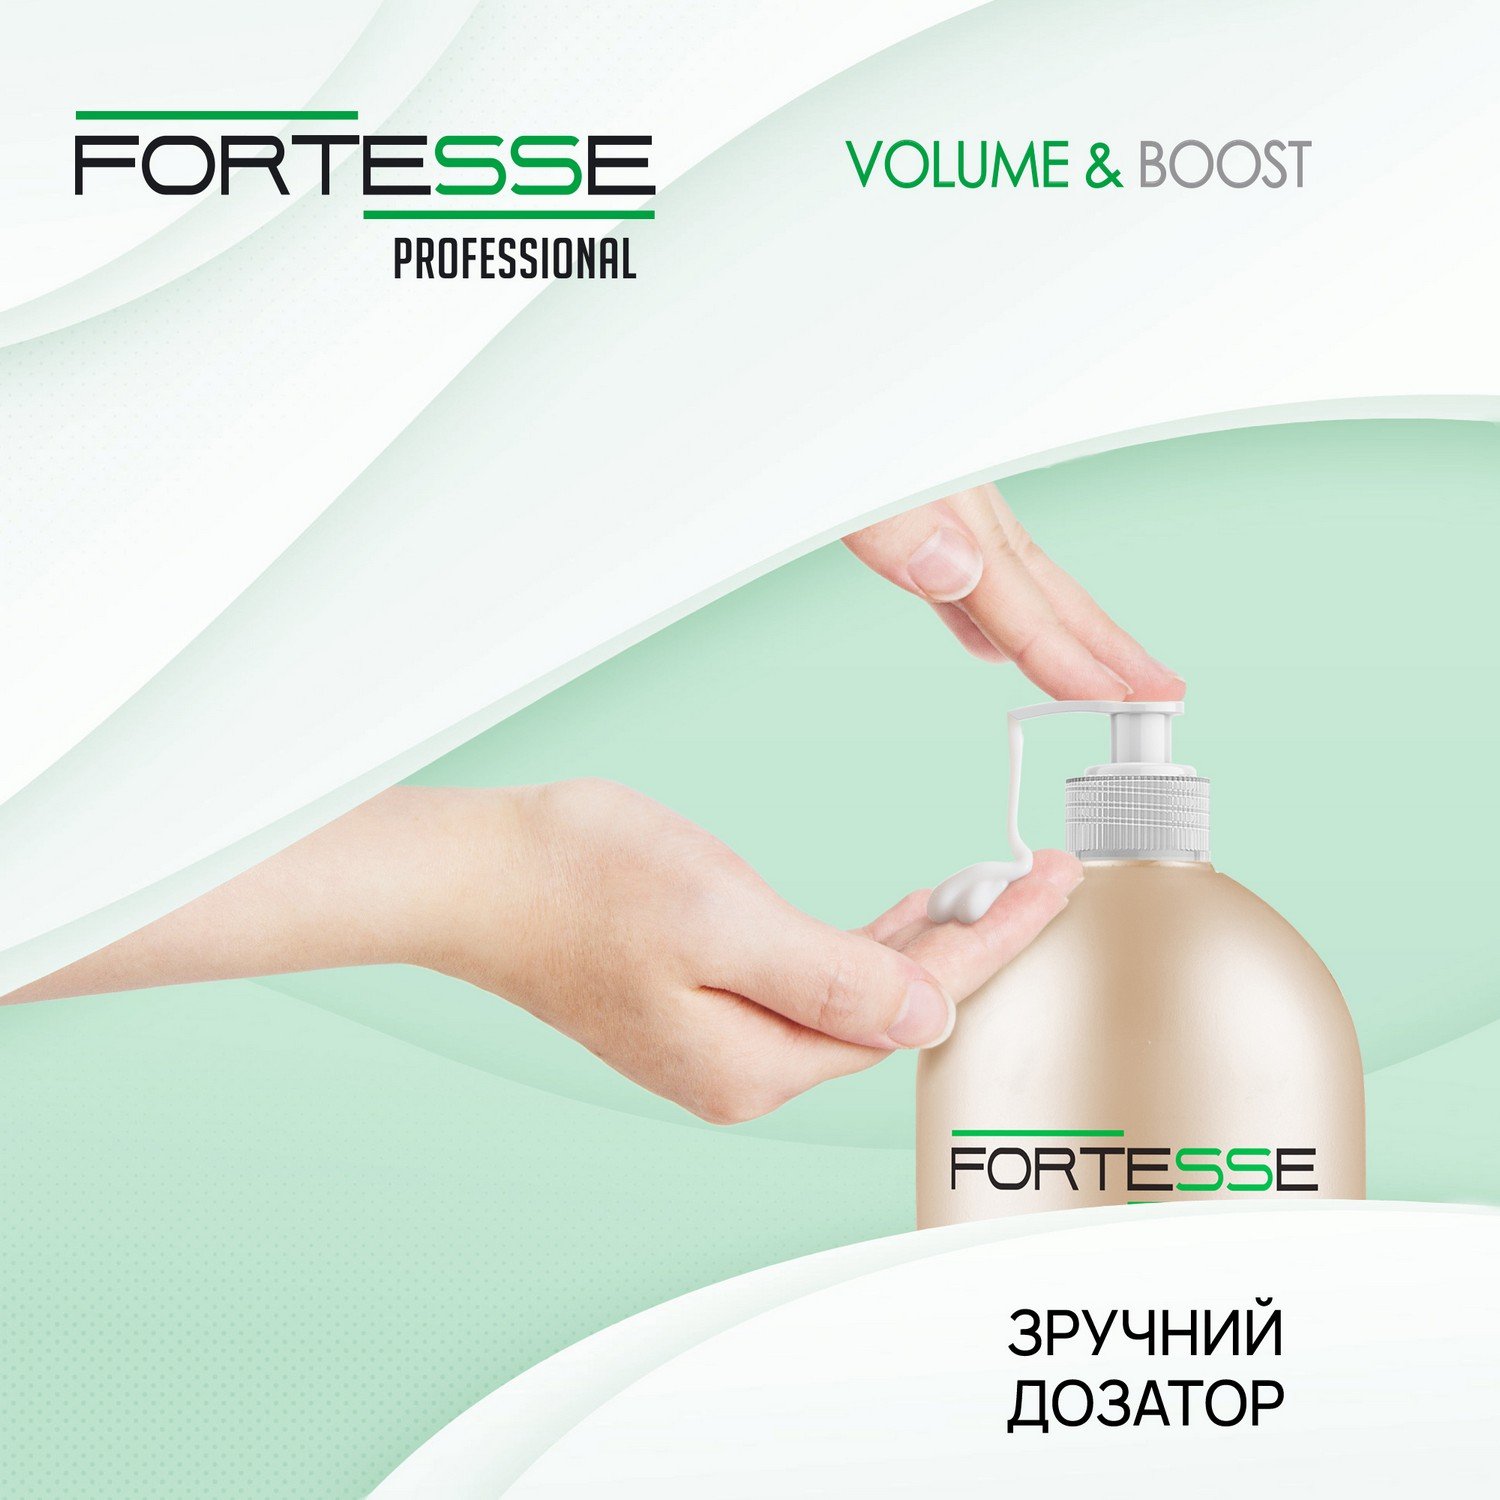 Маска-крем Fortesse Professional Volume & Boost Объем, для тонких волос, с дозатором, 1000 мл - фото 2